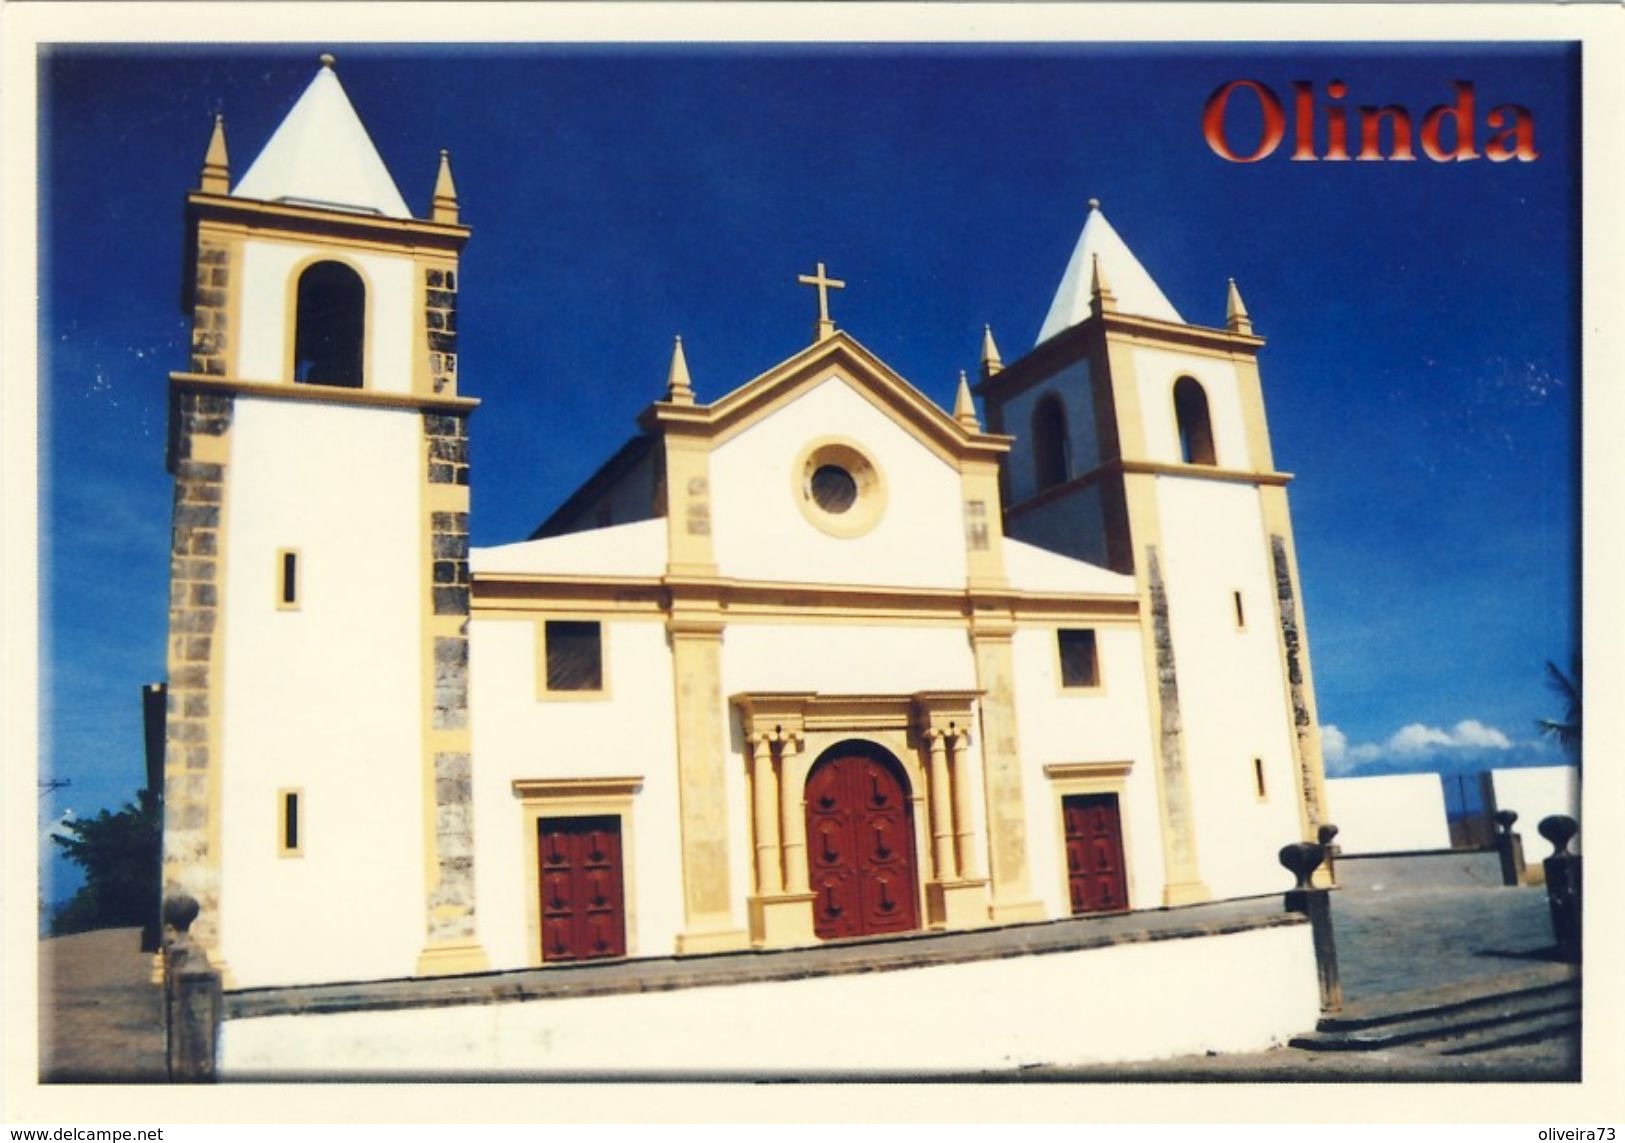 OLINDA - Igreja Da Sé - BRASIL - Belo Horizonte